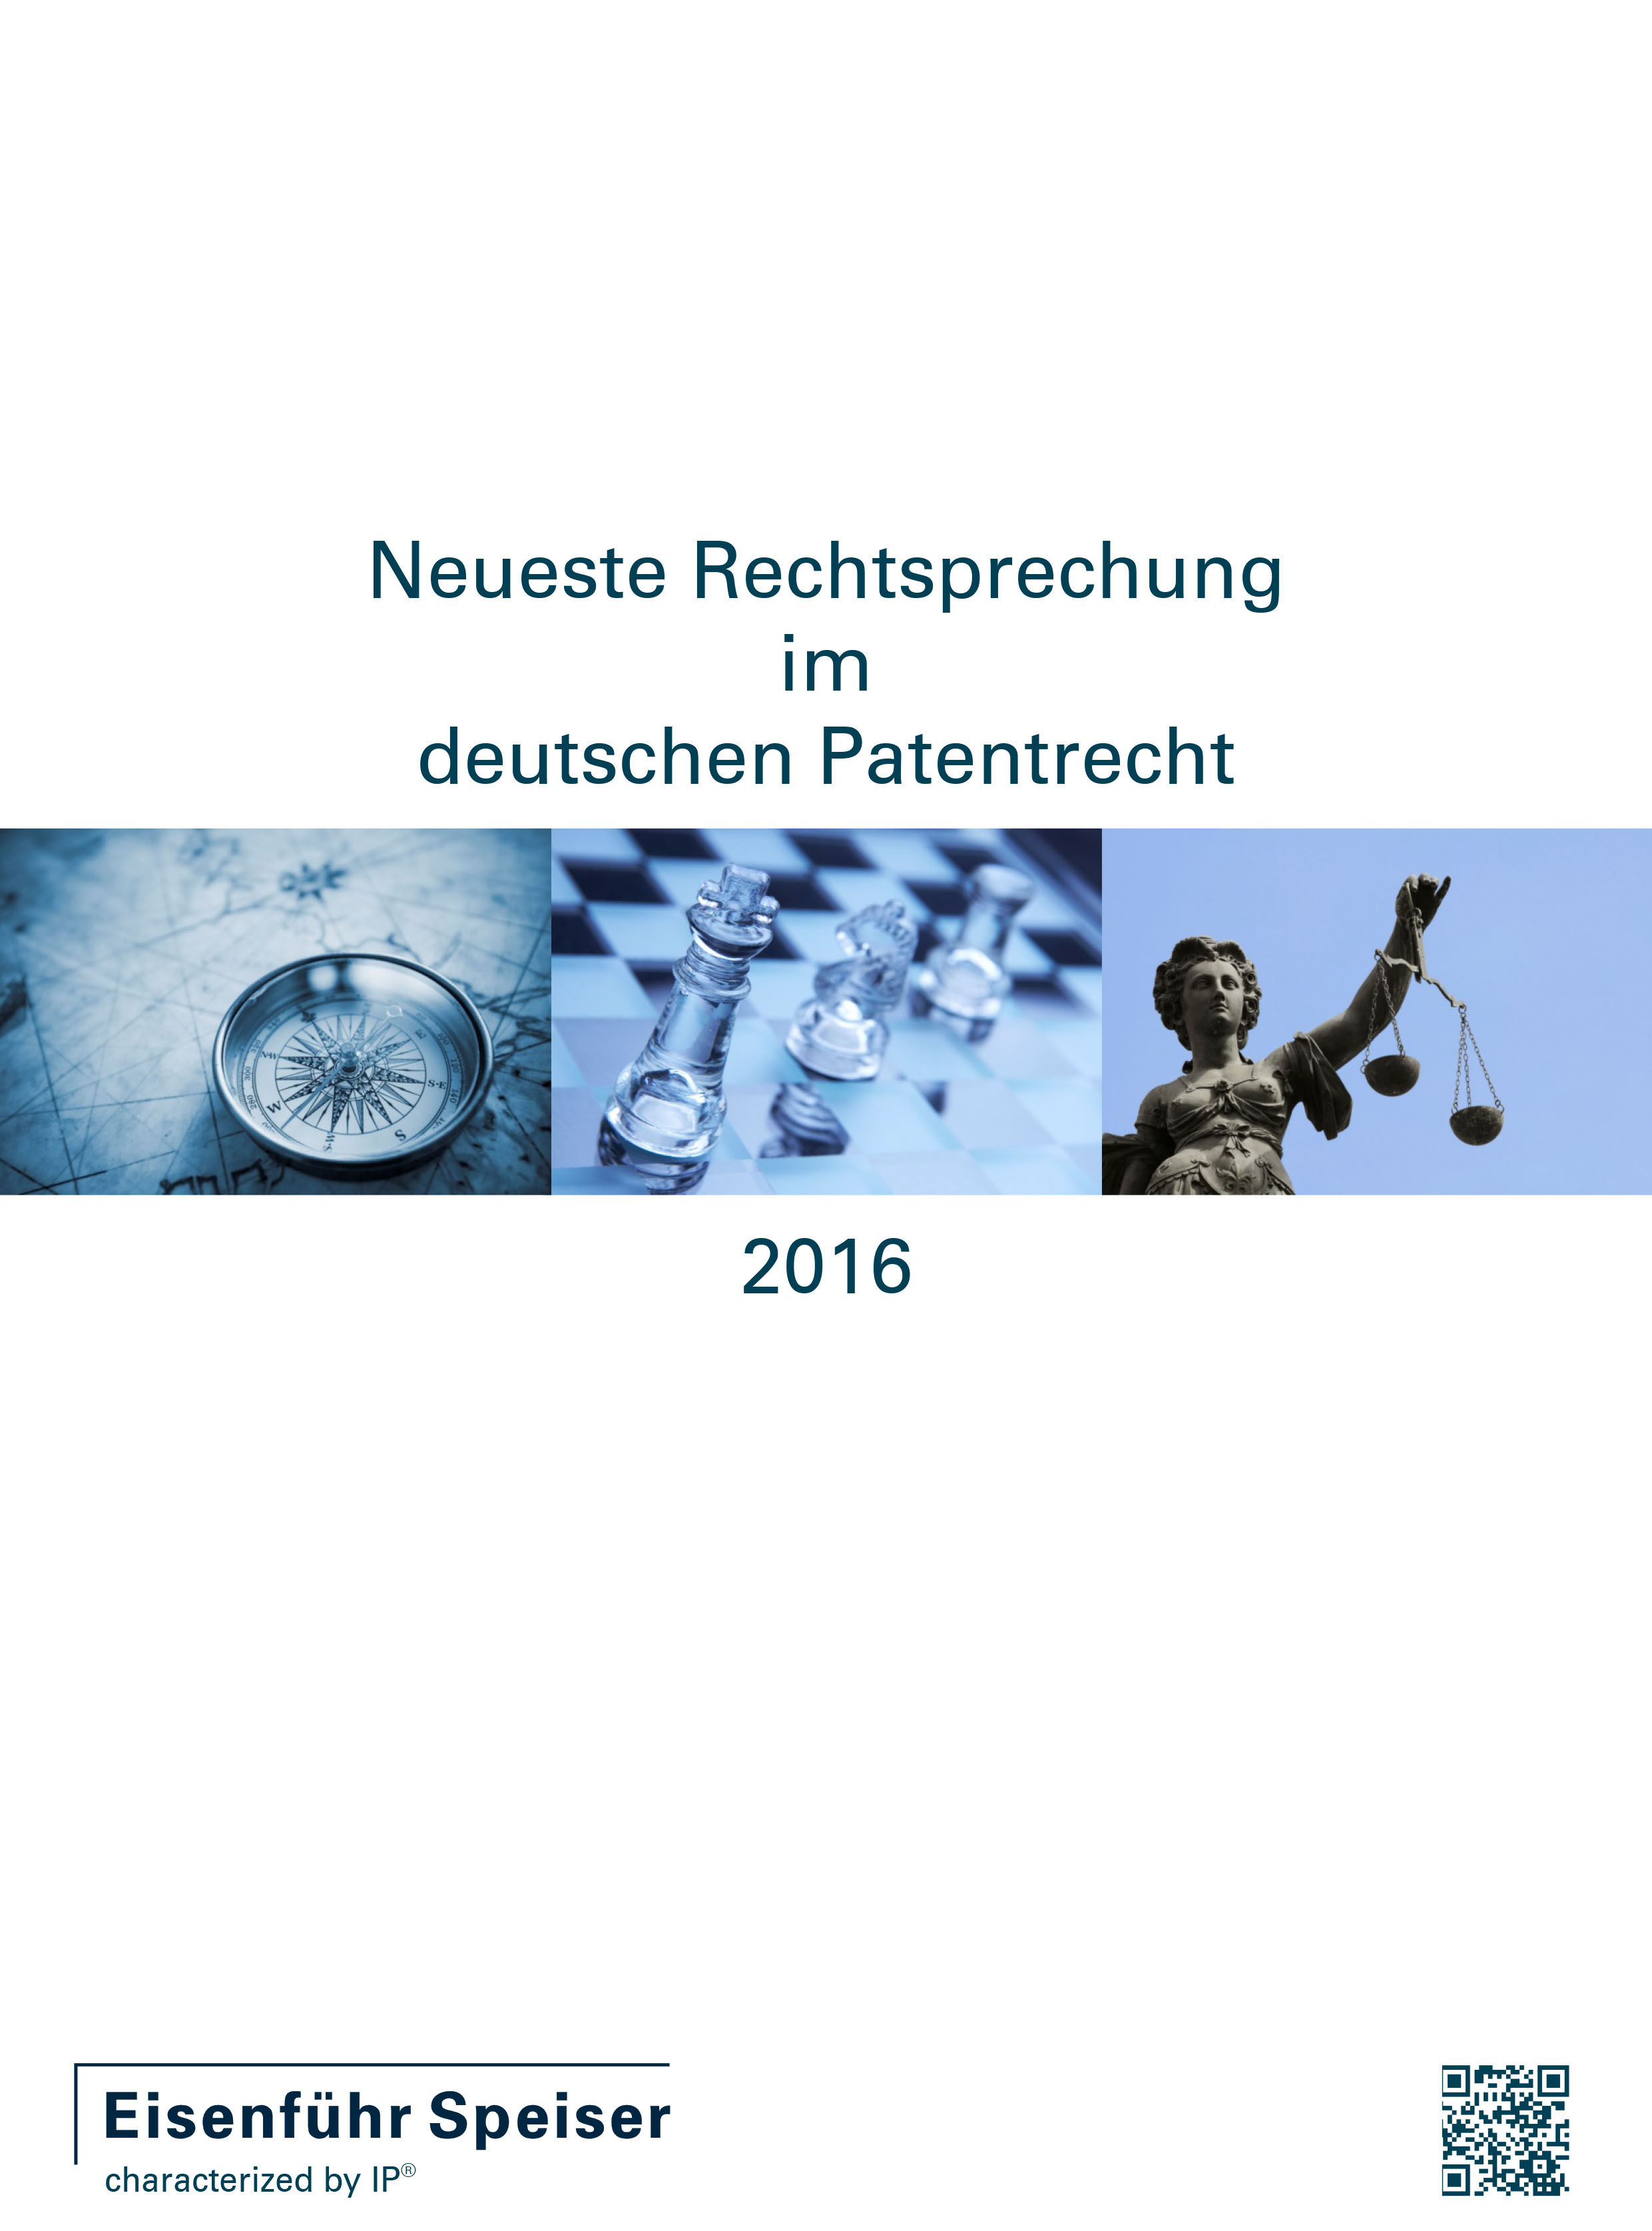 Neueste Rechtsprechung im deutschen Patentrecht 2016